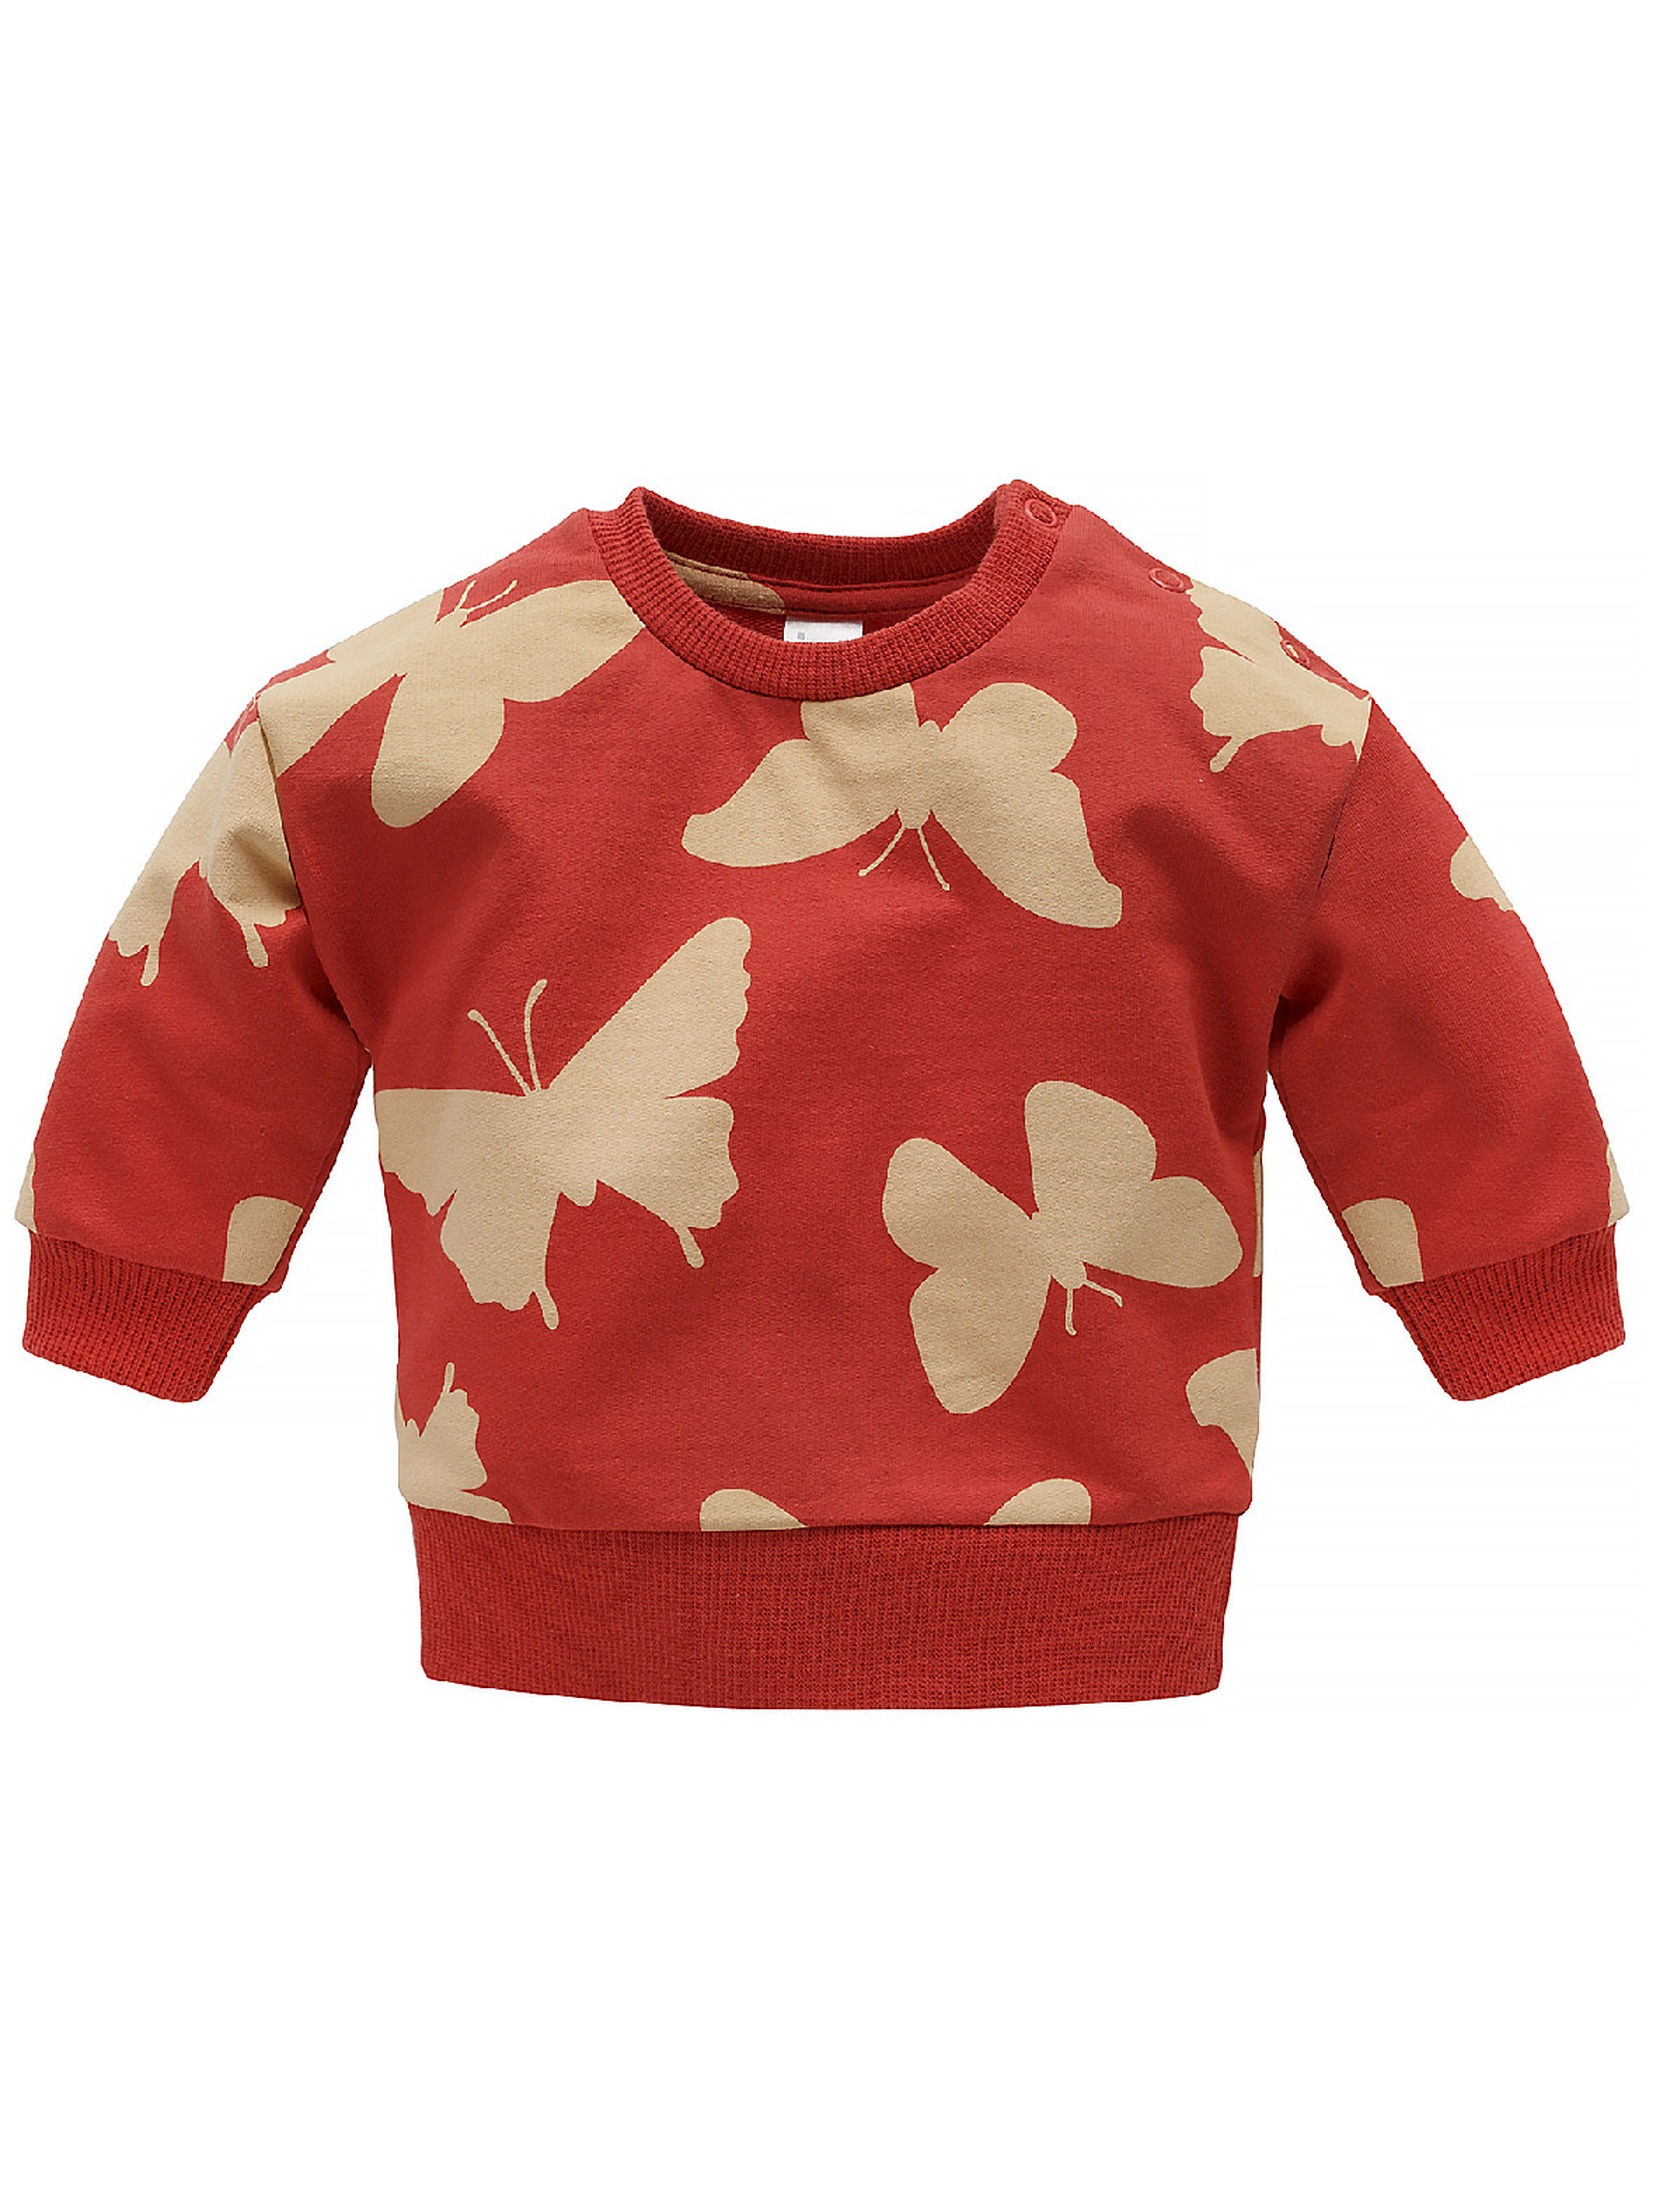 Bawełniana bluza niemowlęca Imagine czerwona